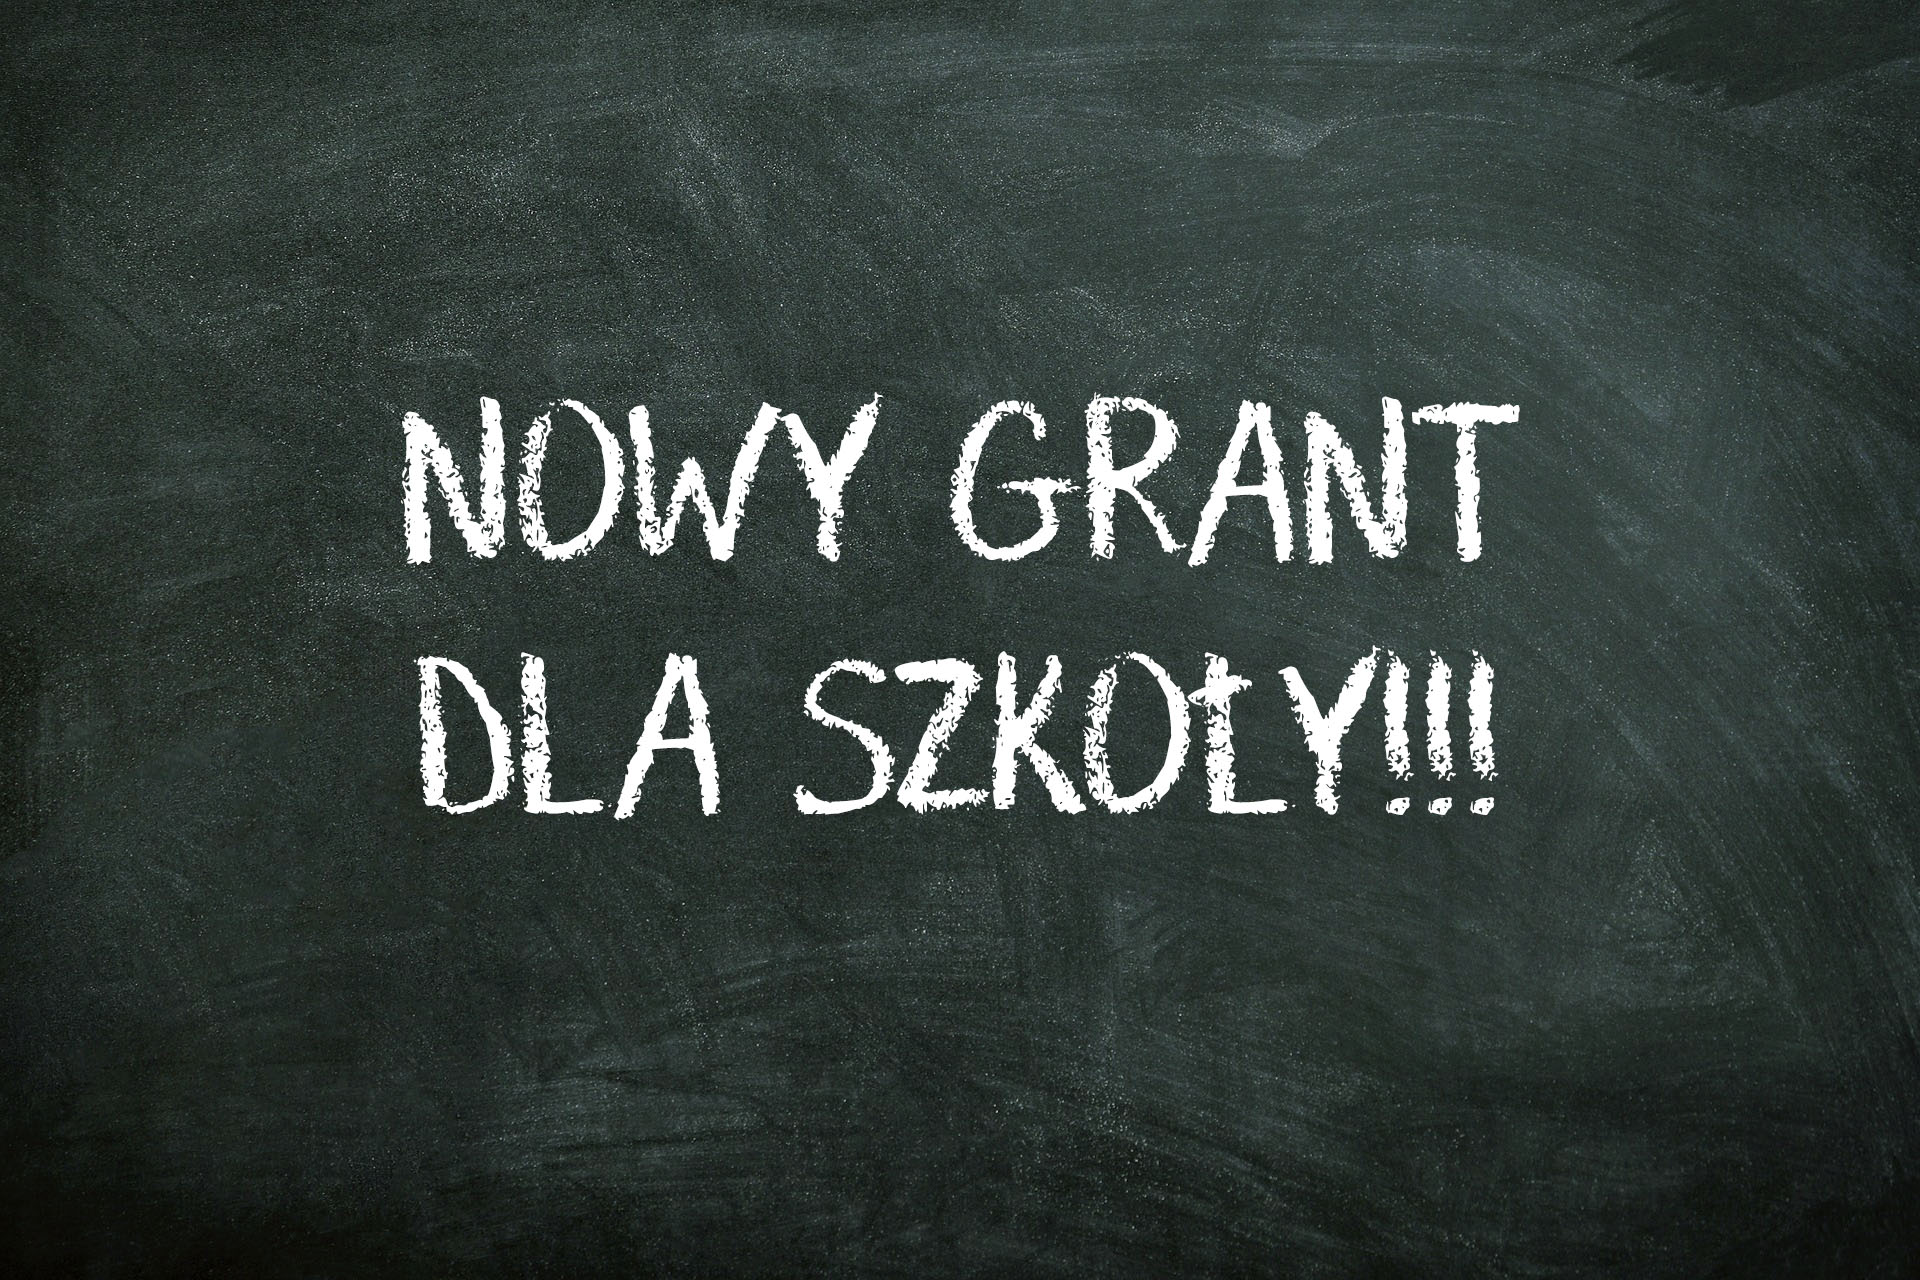 nowy grant dla szkoly2019